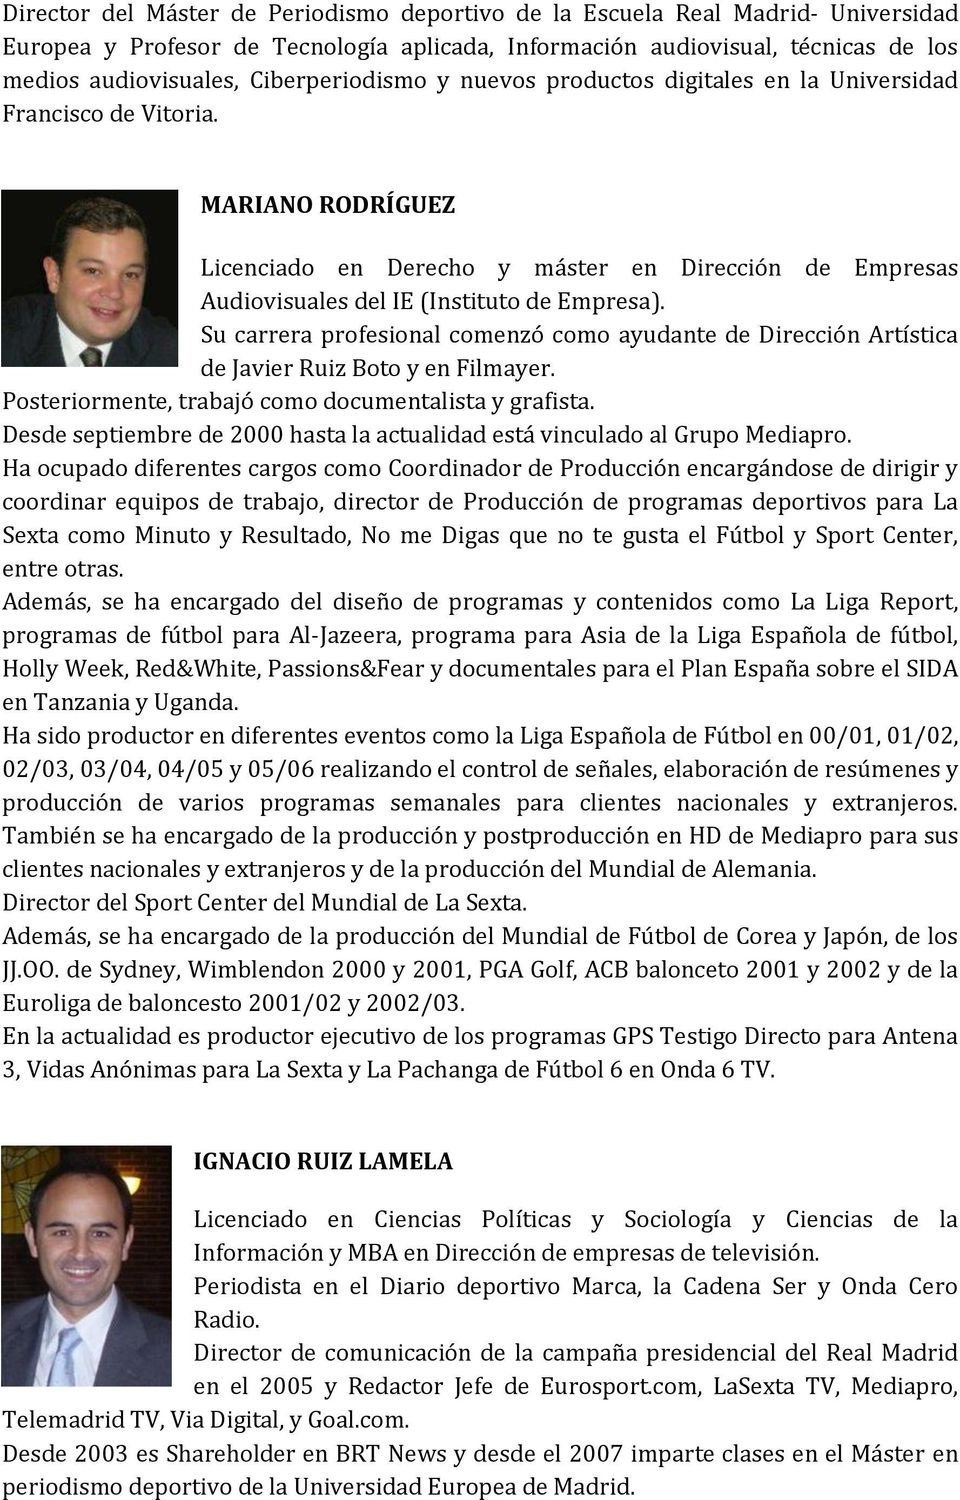 MARIANO RODRÍGUEZ Licenciado en Derecho y máster en Dirección de Empresas Audiovisuales del IE (Instituto de Empresa).